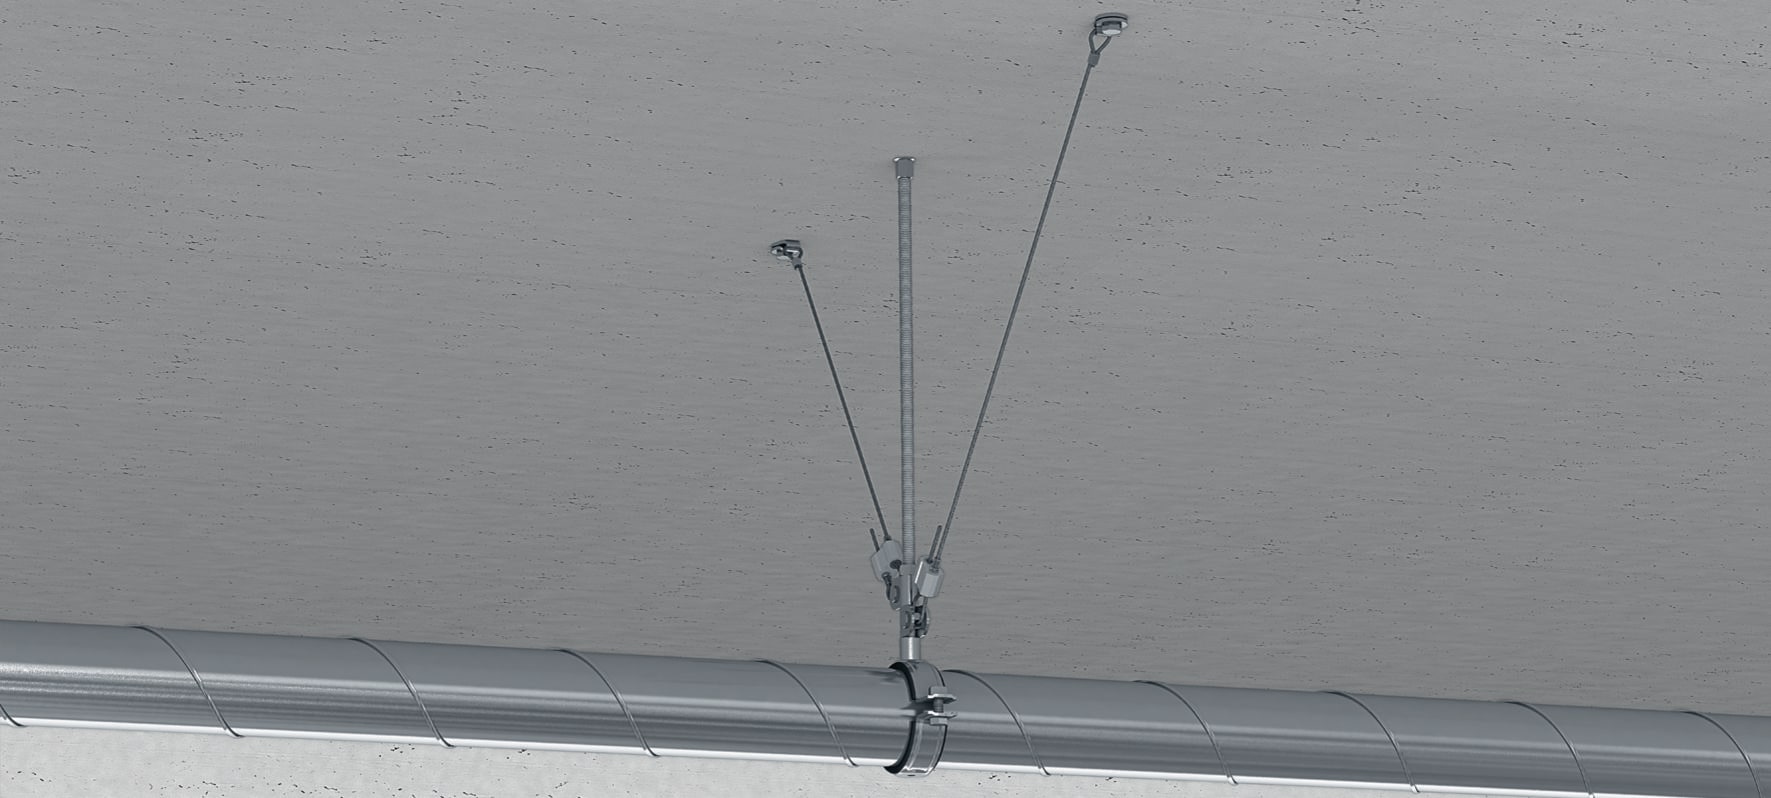 Kit Câble de suspension + Galet de verrouillage SUFIX 